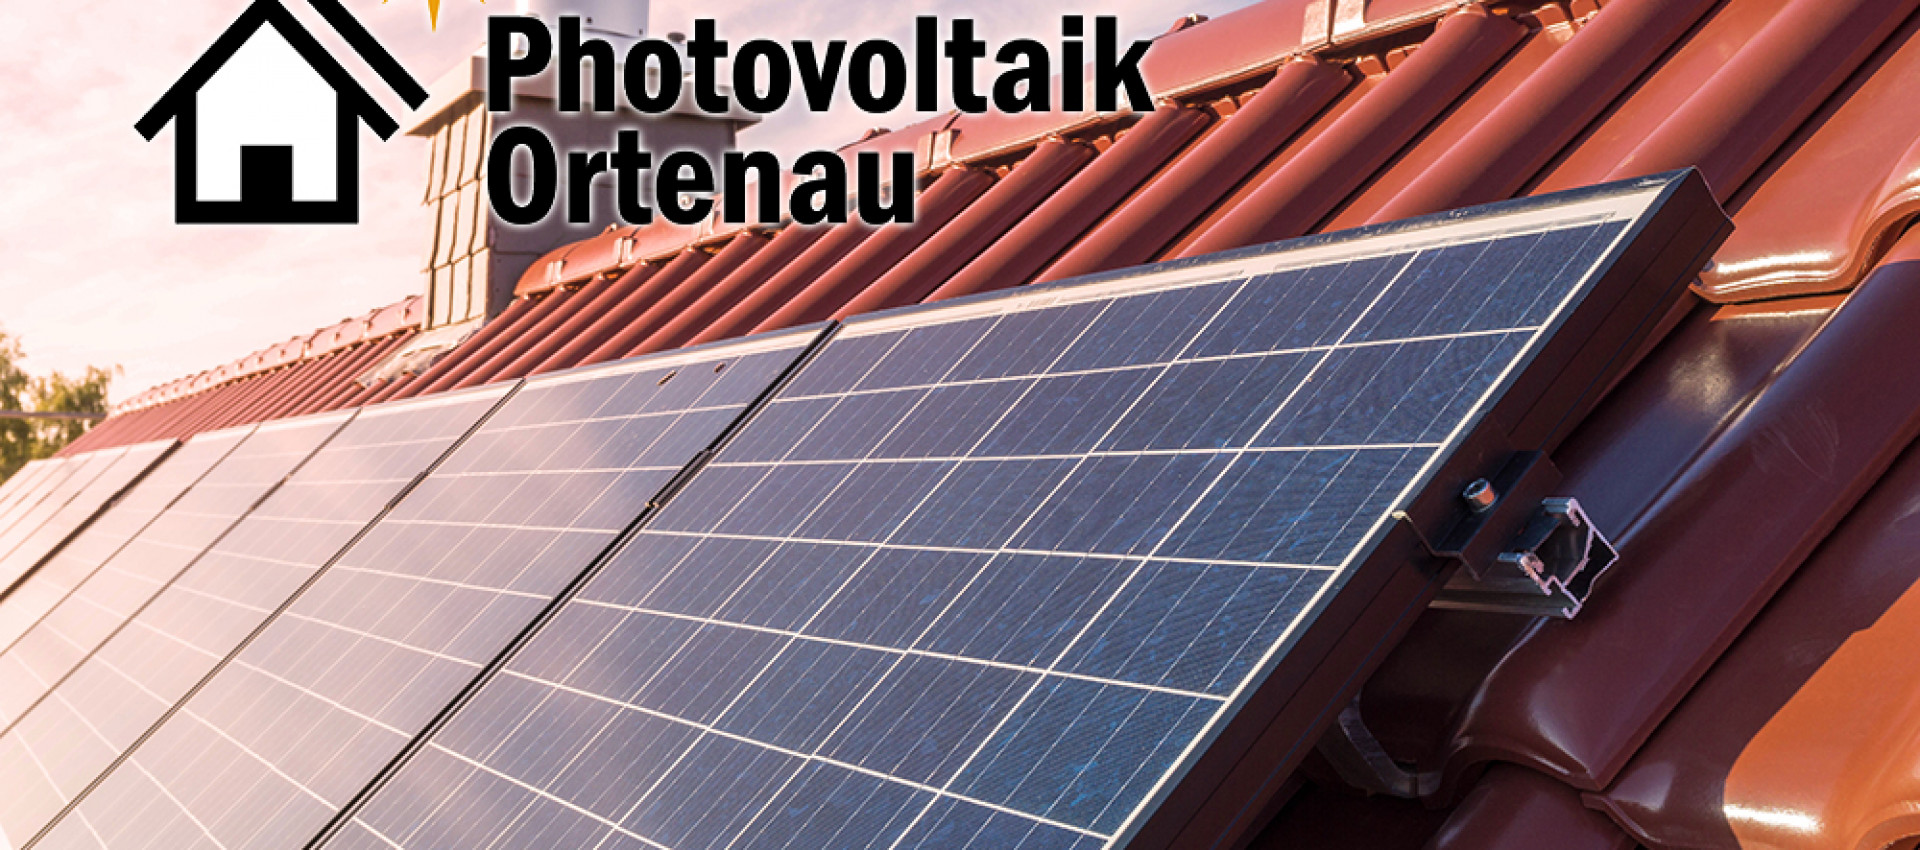 Autarkie durch Sonnenkraft? Photovoltaik – #RegioGespräch mit Stephan Echle, Gengenbach